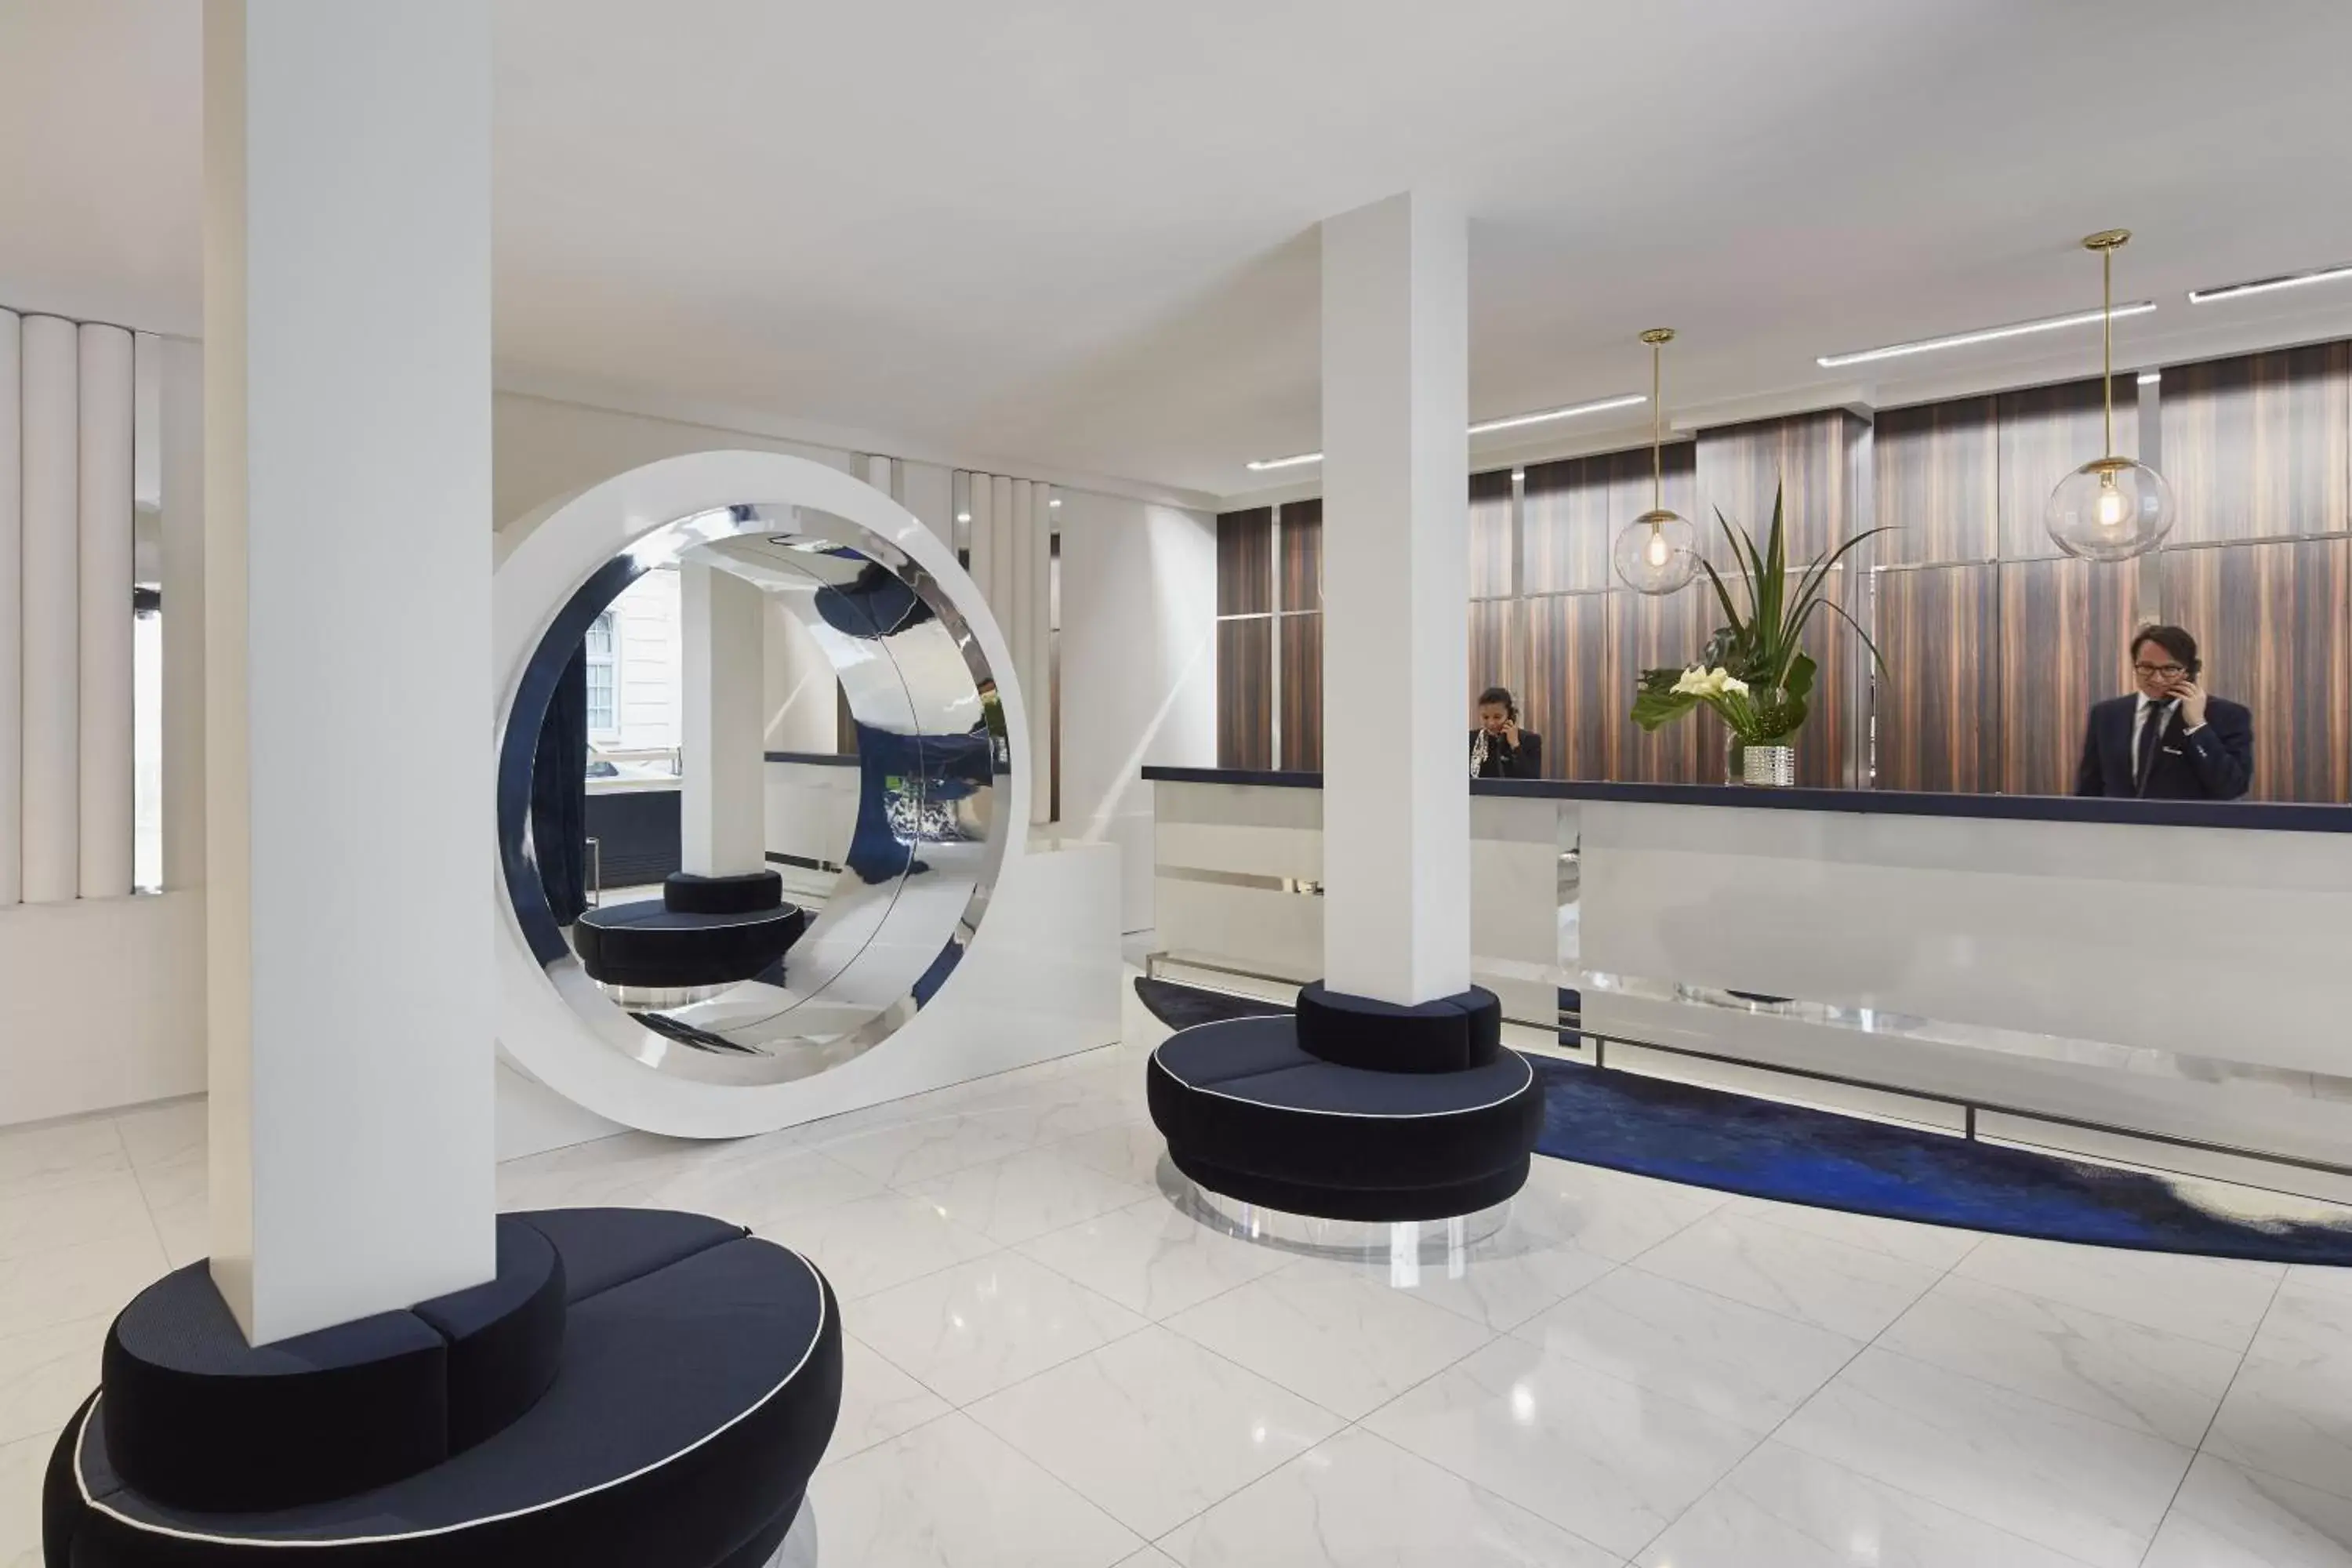 Lobby or reception, Bathroom in Hôtel Bel Ami